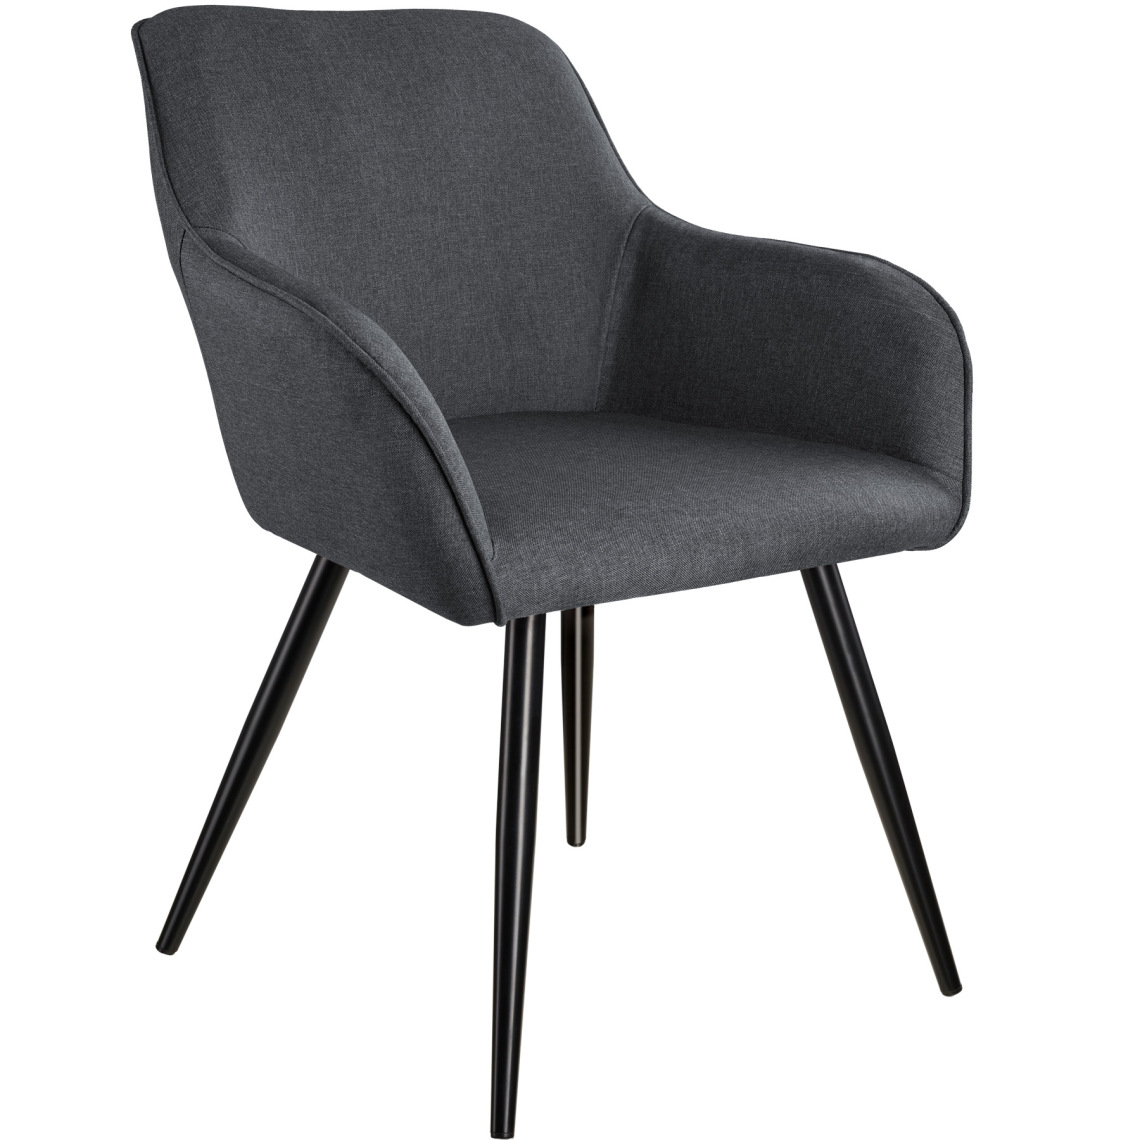 Tectake - Chaise Marilyn aspect lin noir - gris foncé-noir - Chaises